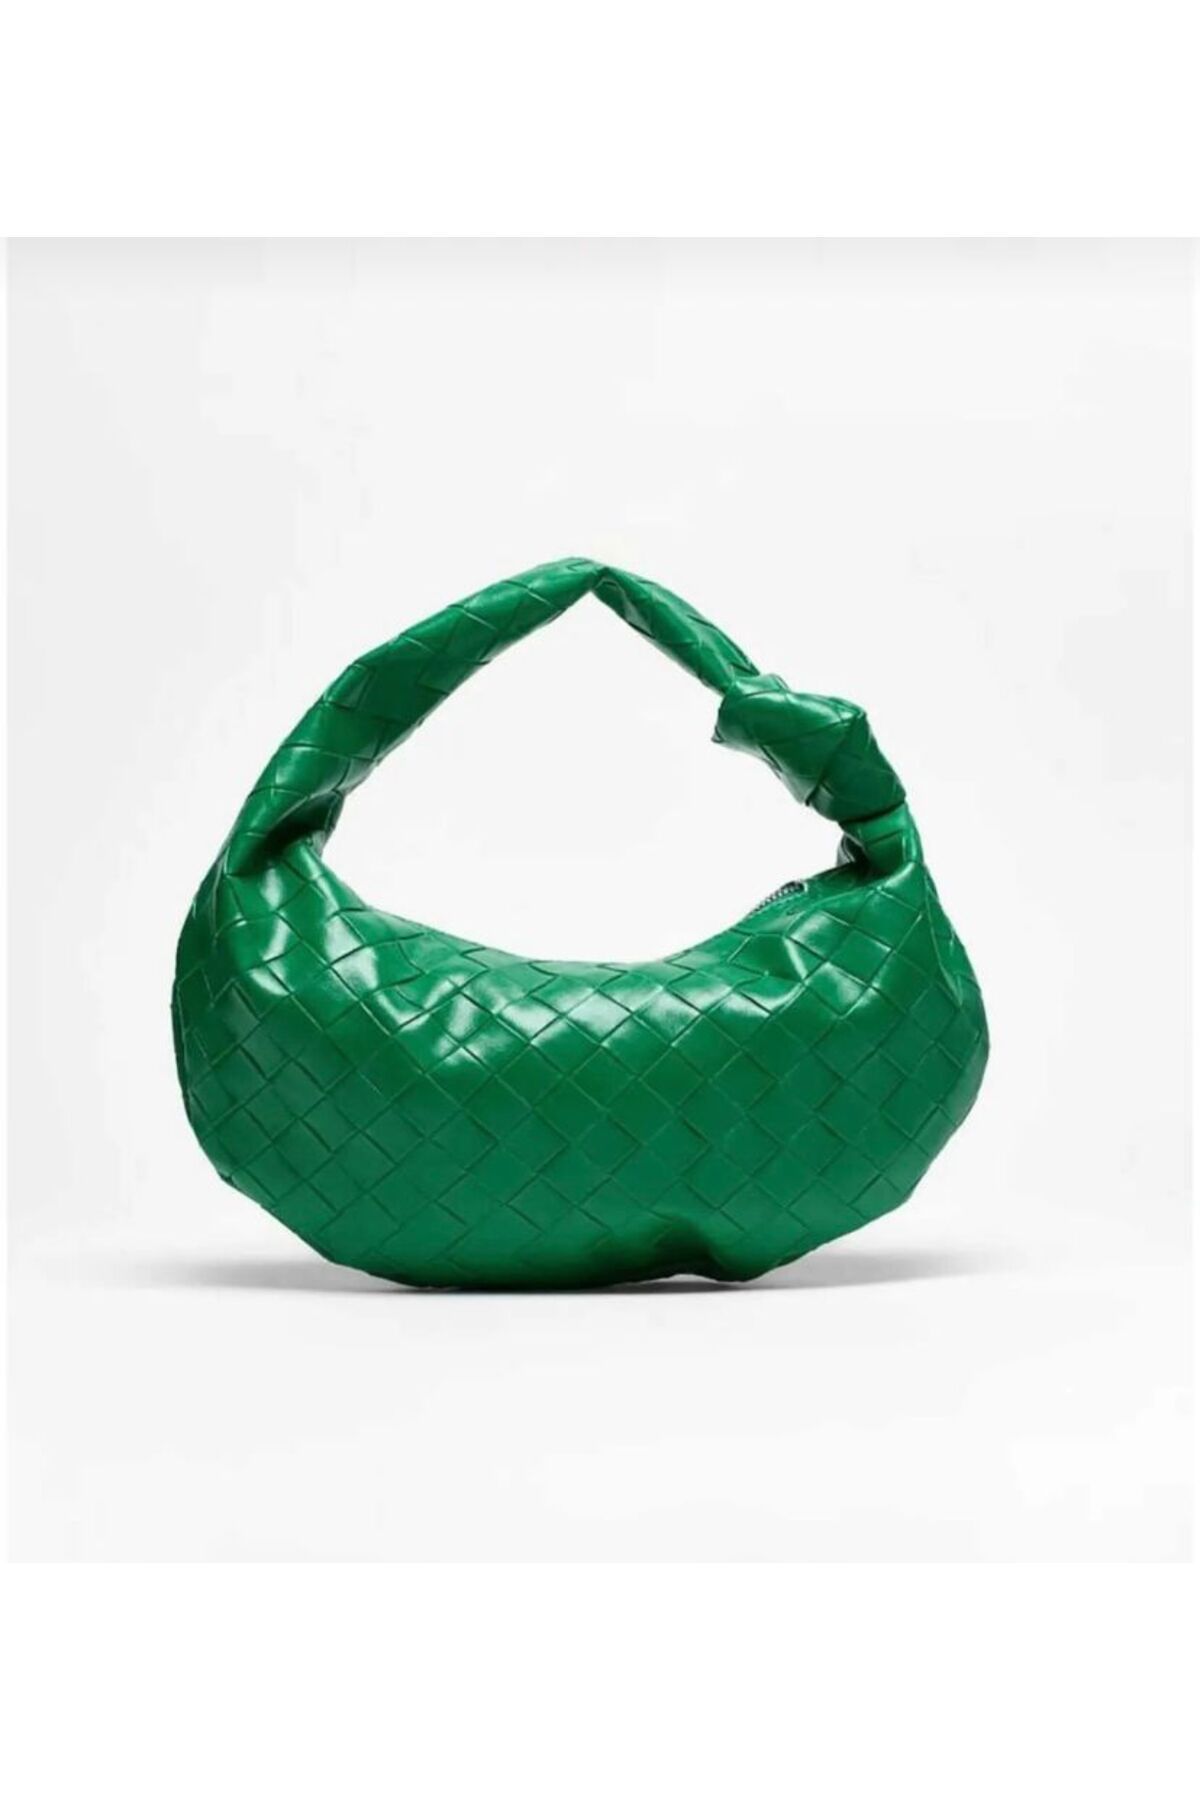 Mercan Stores Kadın Yeşil Örgü ve Düğüm Detaylı Jordie El Çantası